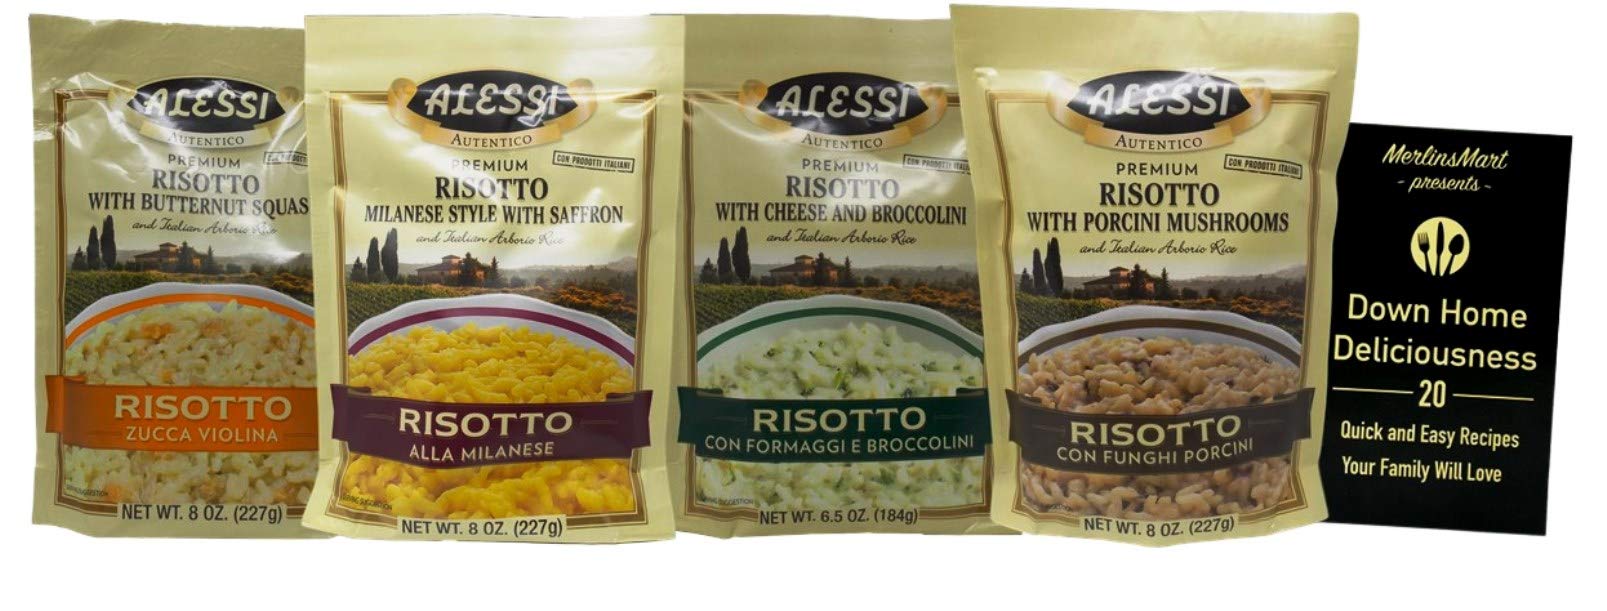 Arborio Rice - Alessi Foods